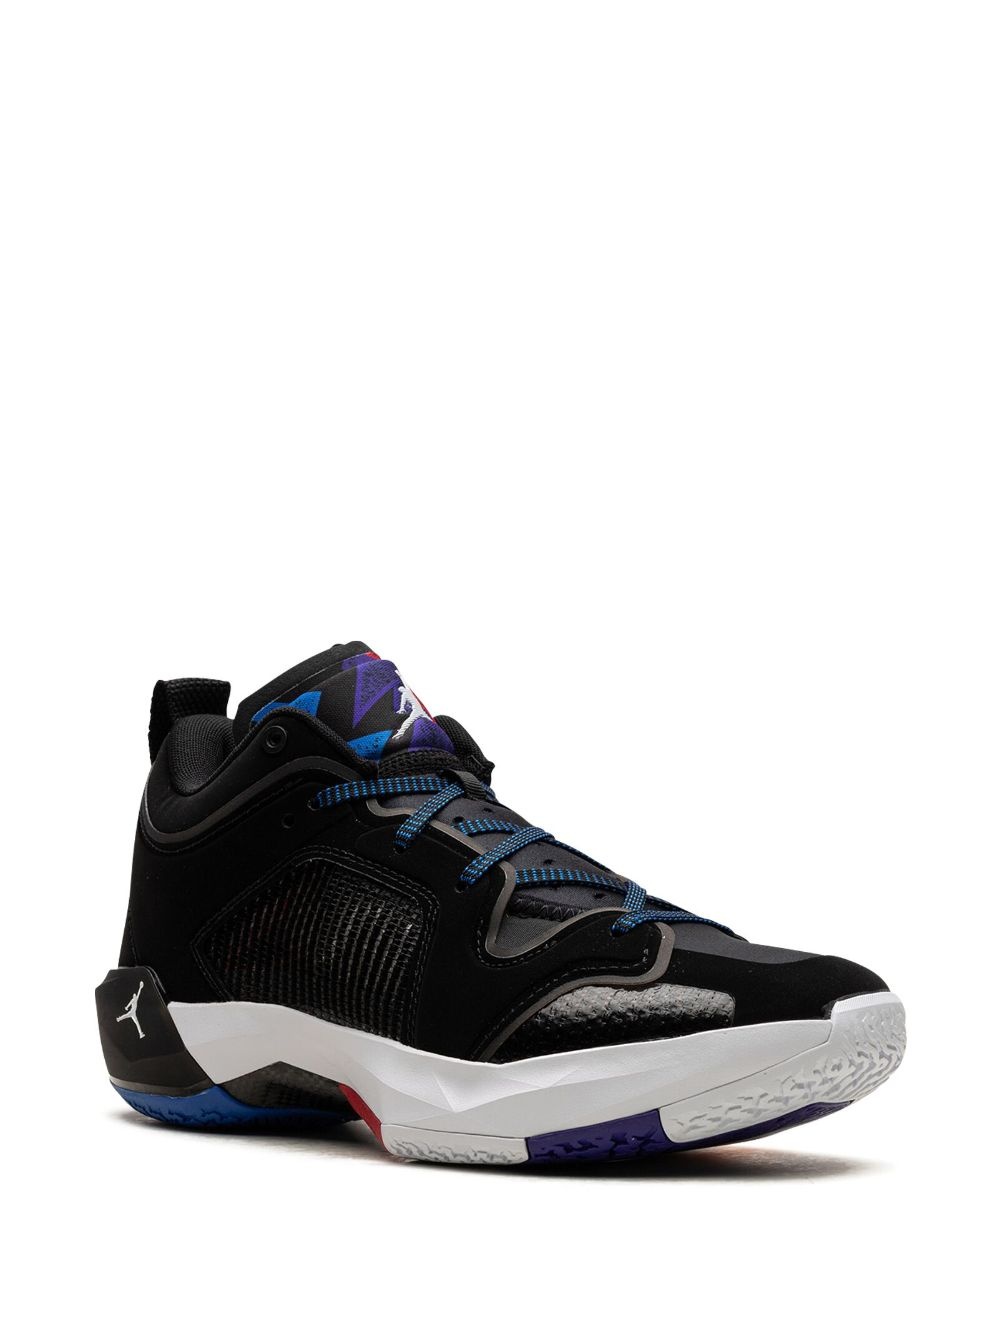 Air Jordan XXXVII "Nothing But Net" sneakers - 2